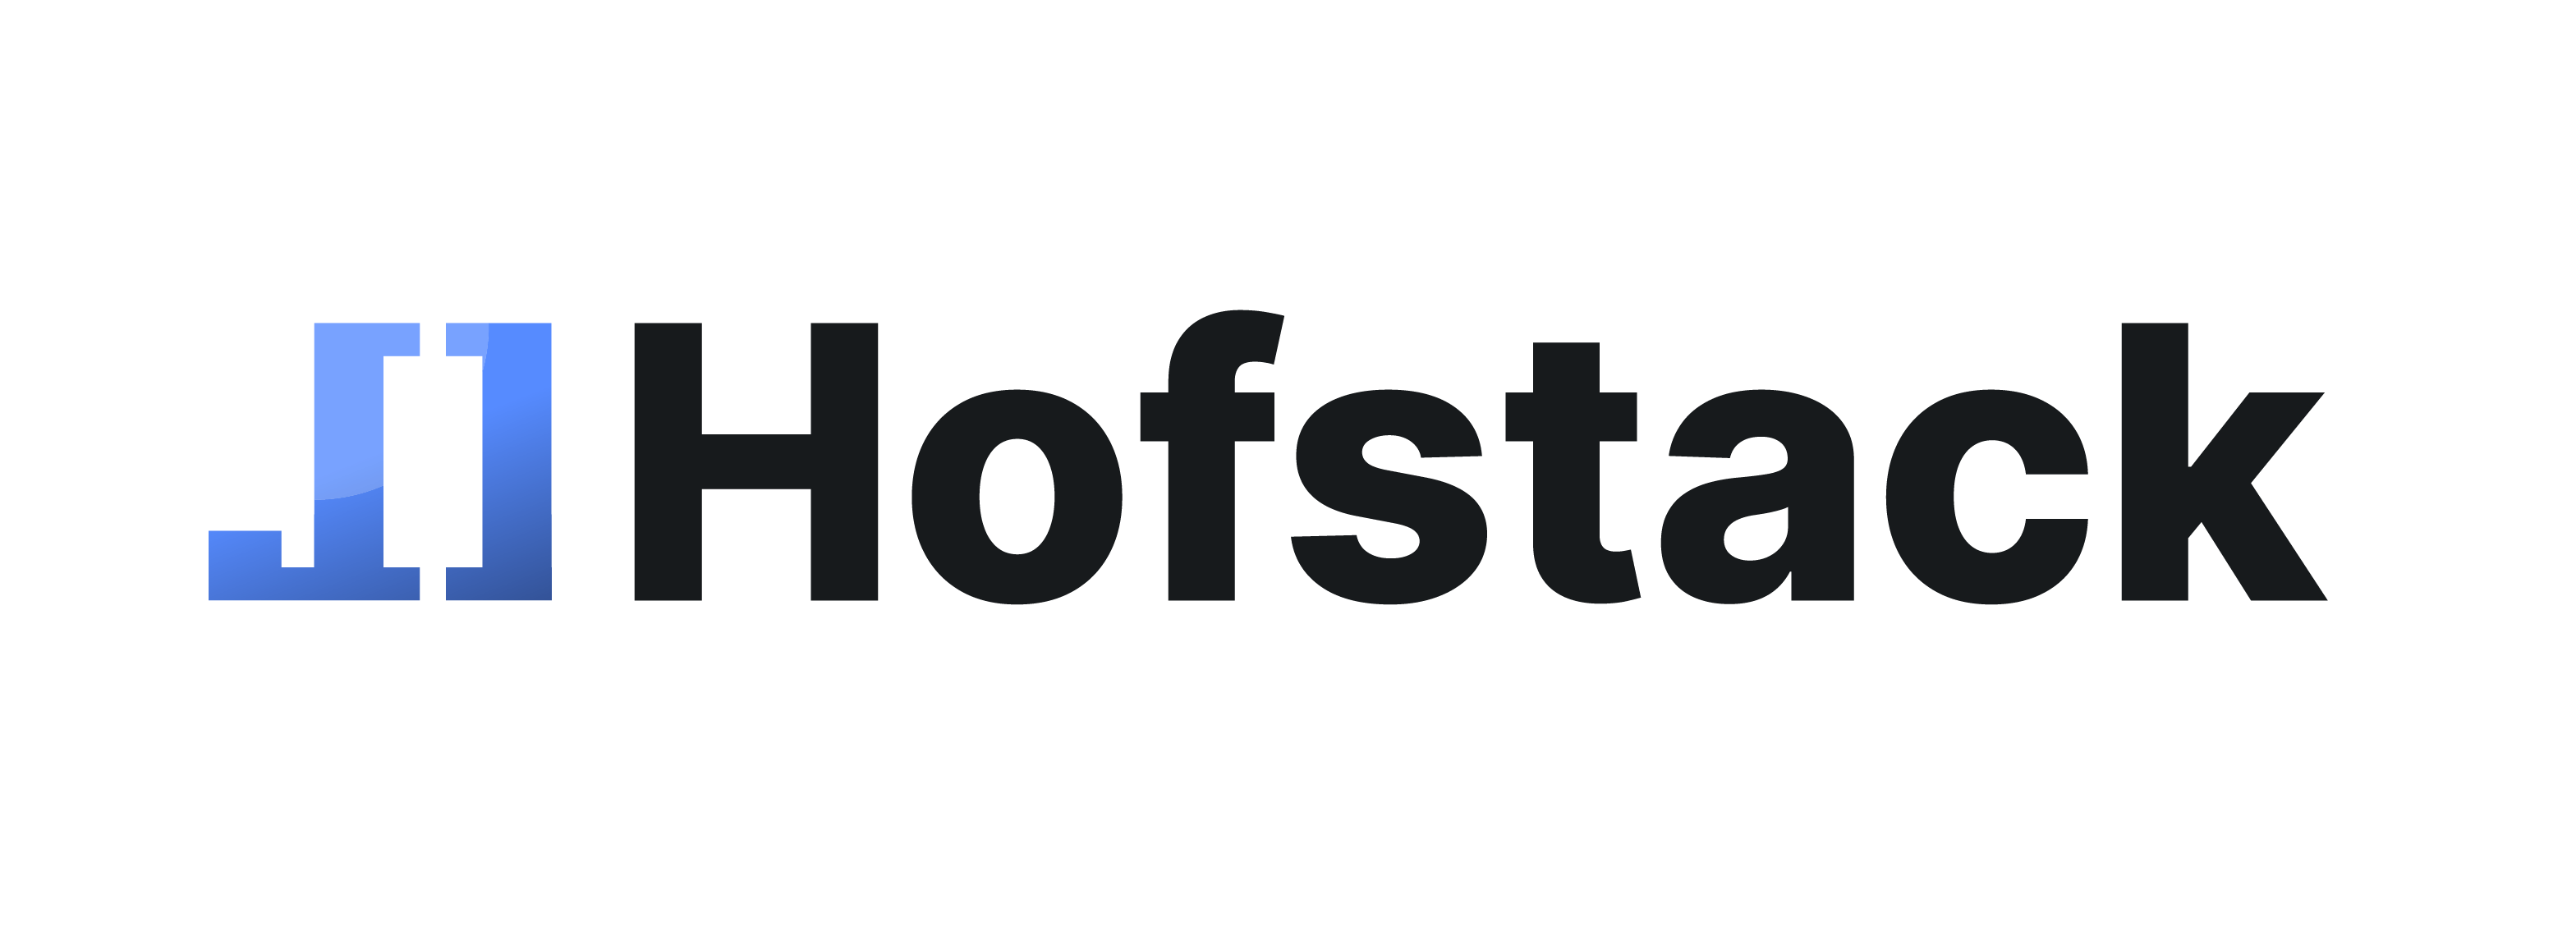 Hofstack